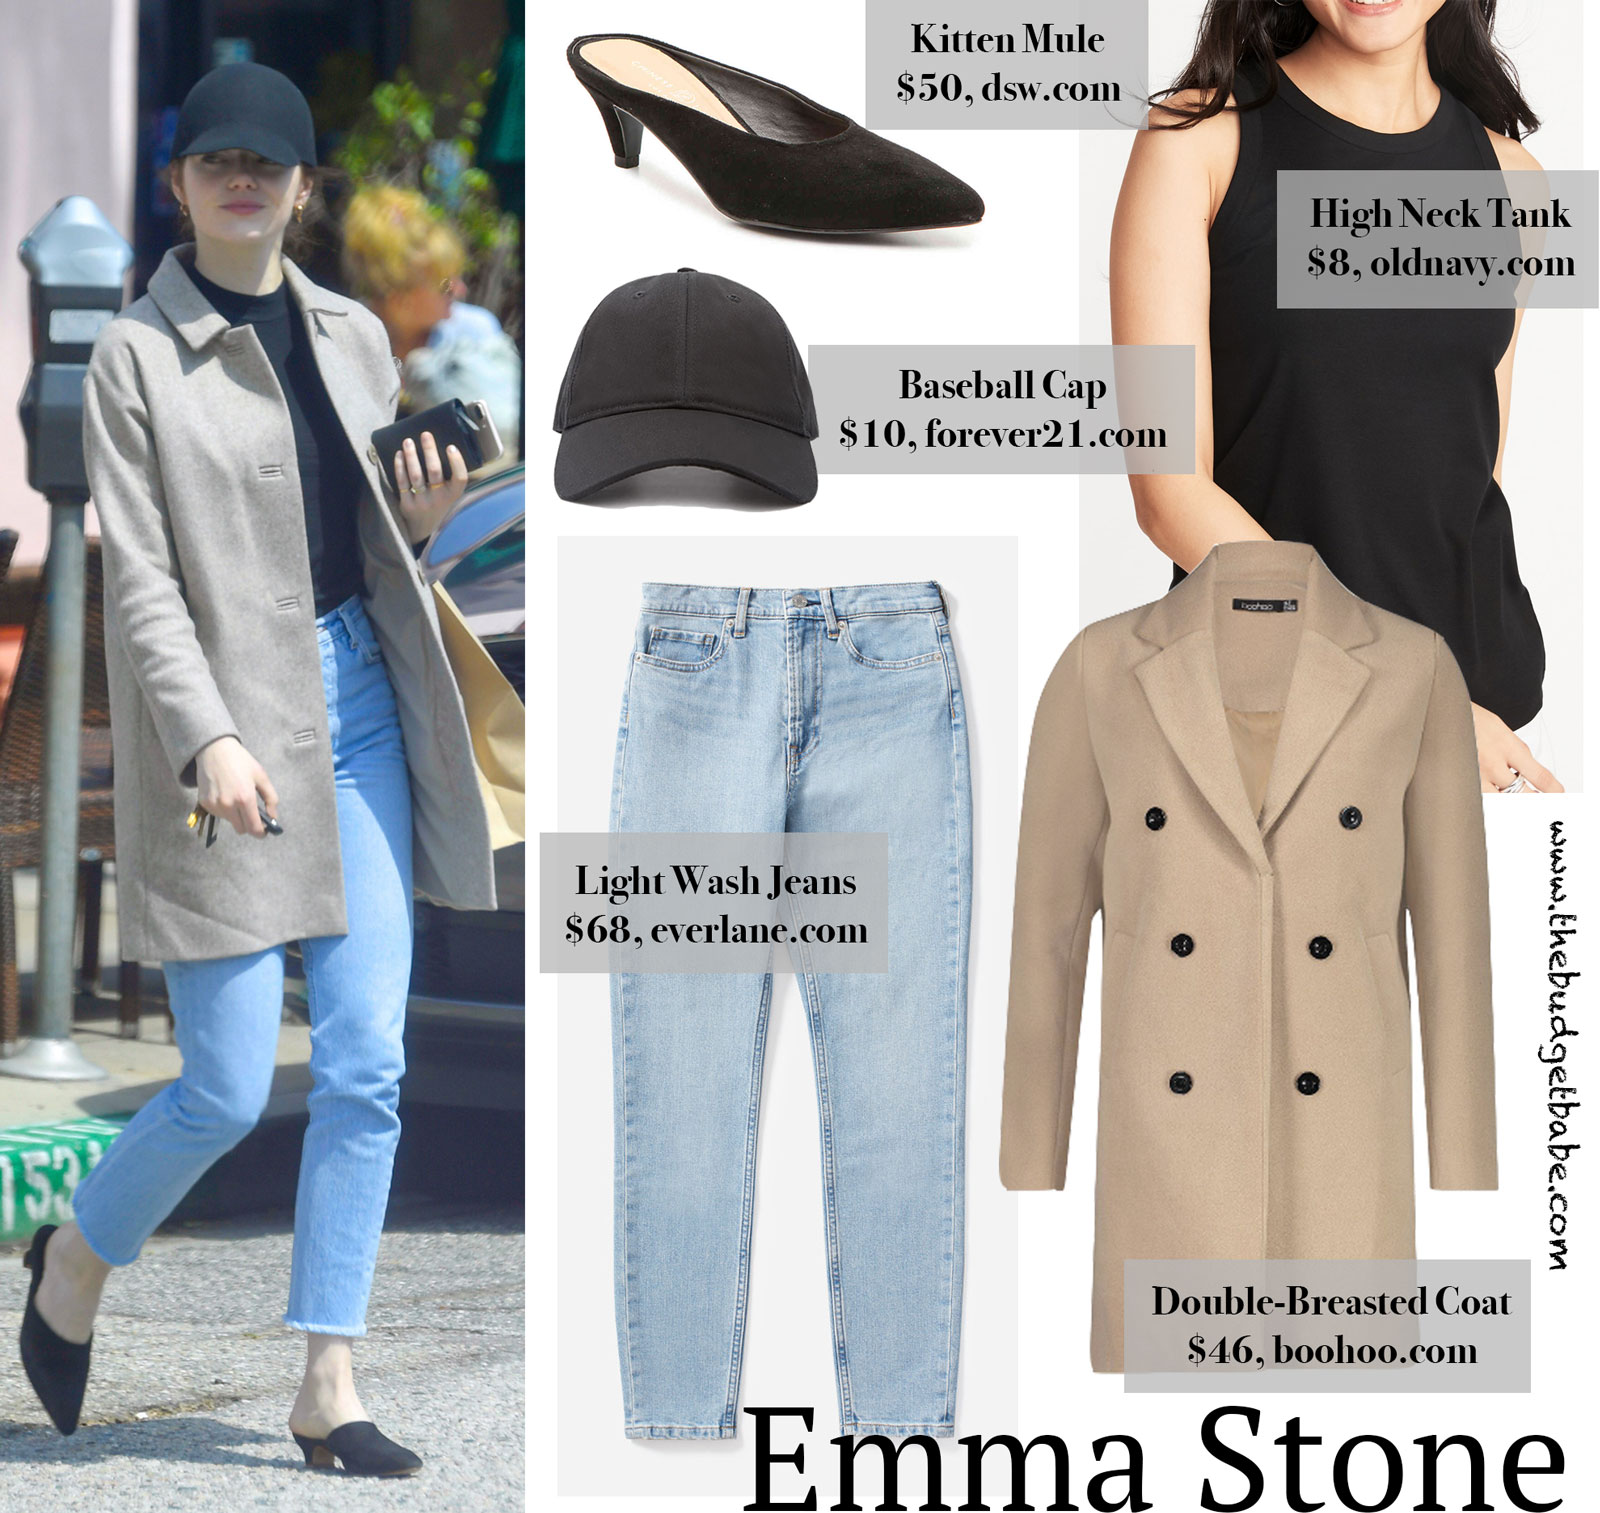 Emma Stone Tan Coat Baseball Cap Look for Less